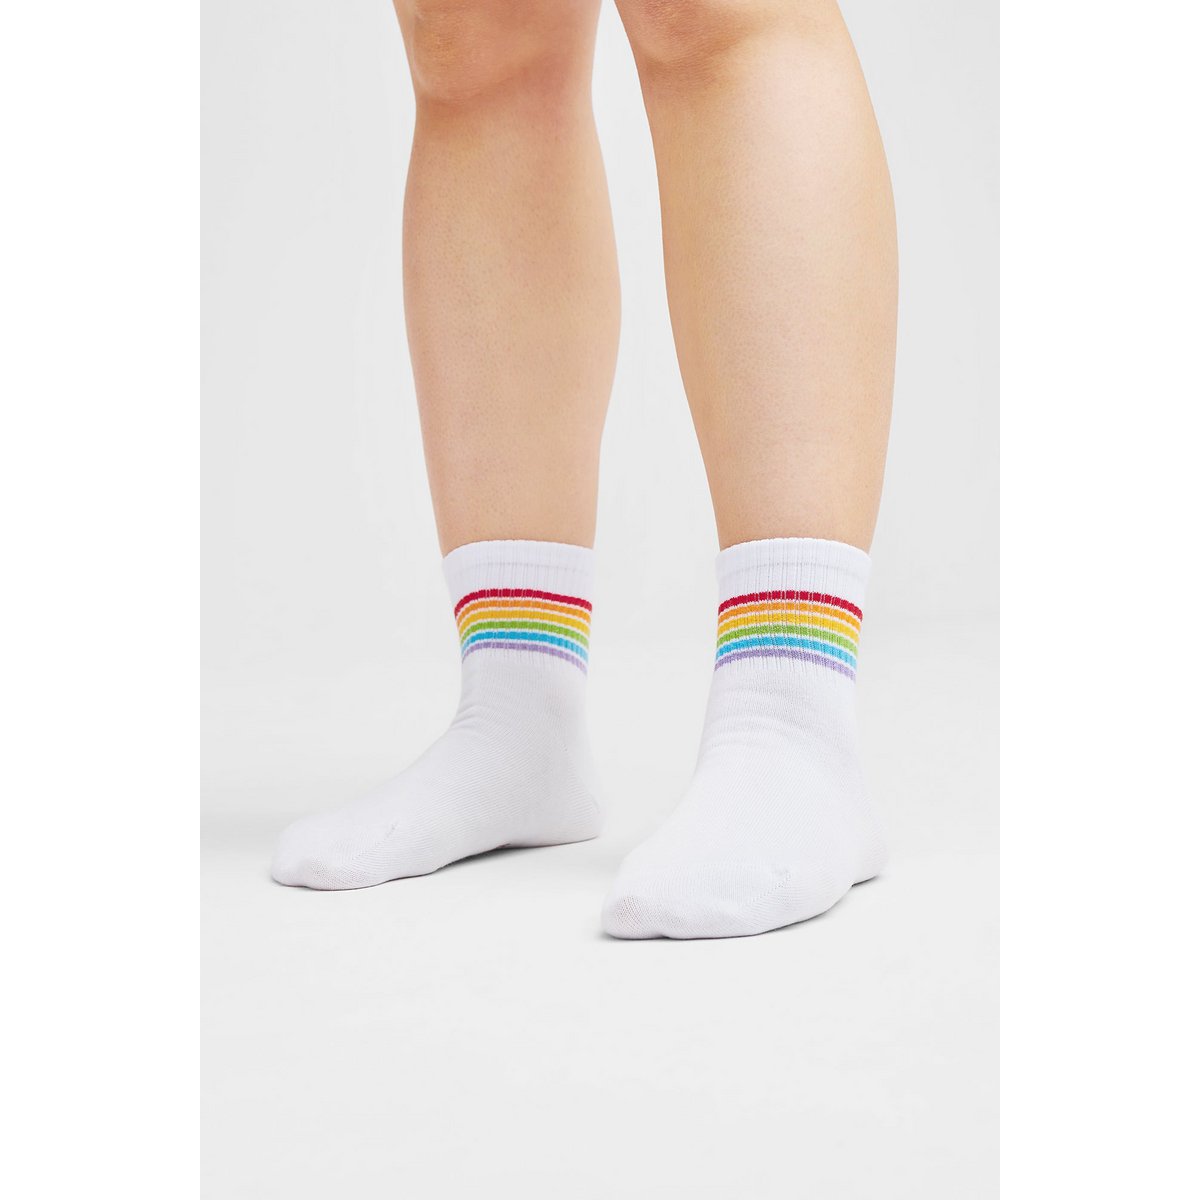 3 Paar Bio Sneaker Socken Stripes, Weiß - 3er Pack Kurze Socken - Klassiker!